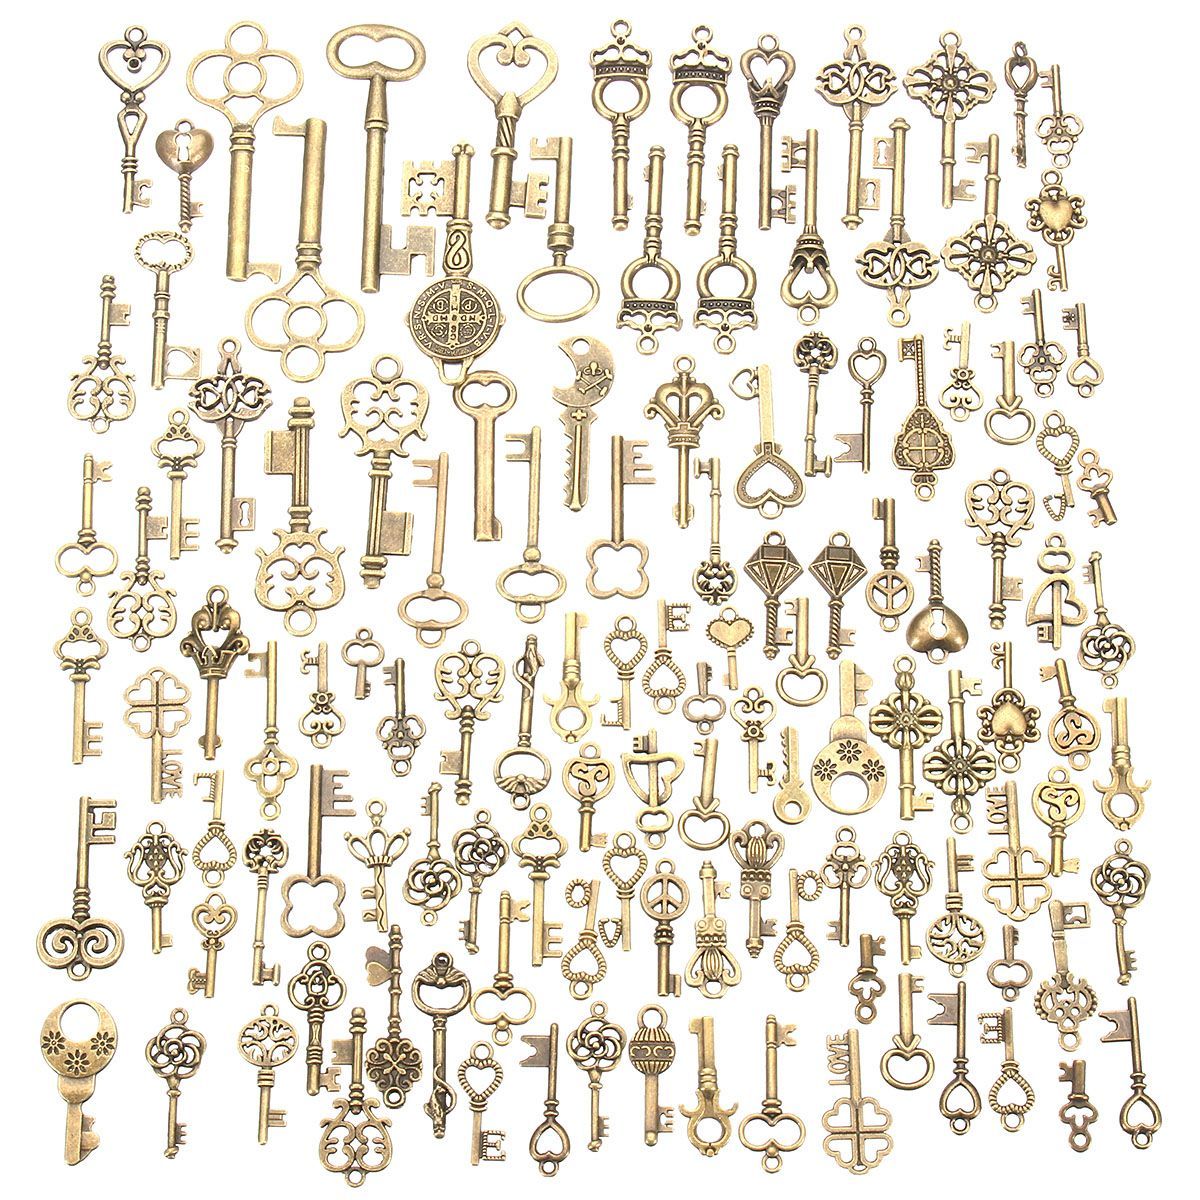 125Pcs-Vintage-Bronze-Key-For-Pendant-Necklace-Bracelet-DIY-Handmade-Accessories-Decoration-1192644